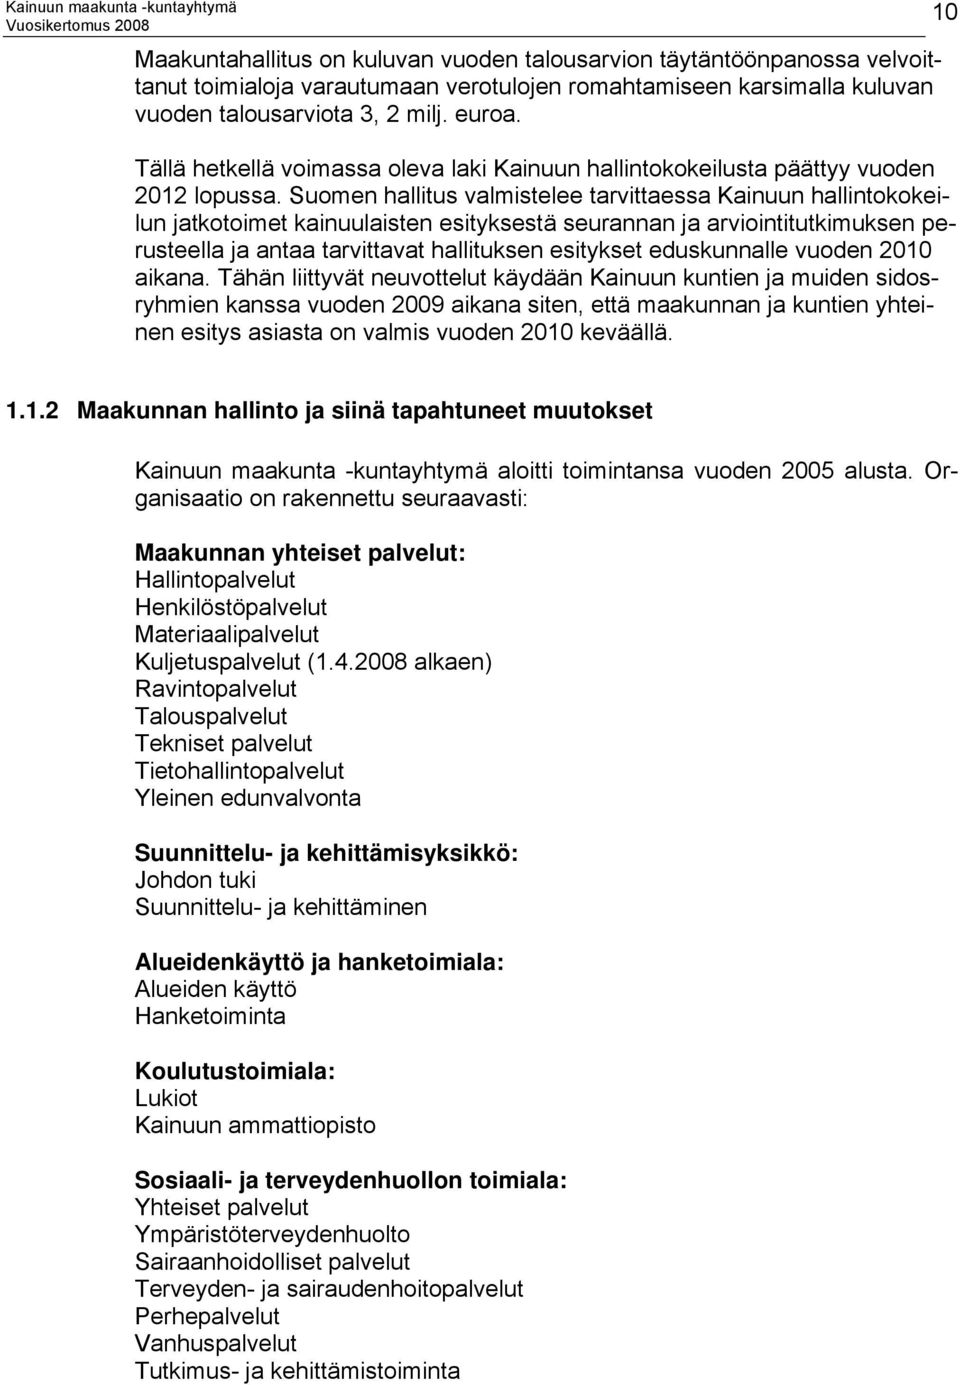 Suomen hallitus valmistelee tarvittaessa Kainuun hallintokokeilun jatkotoimet kainuulaisten esityksestä seurannan ja arviointitutkimuksen perusteella ja antaa tarvittavat hallituksen esitykset